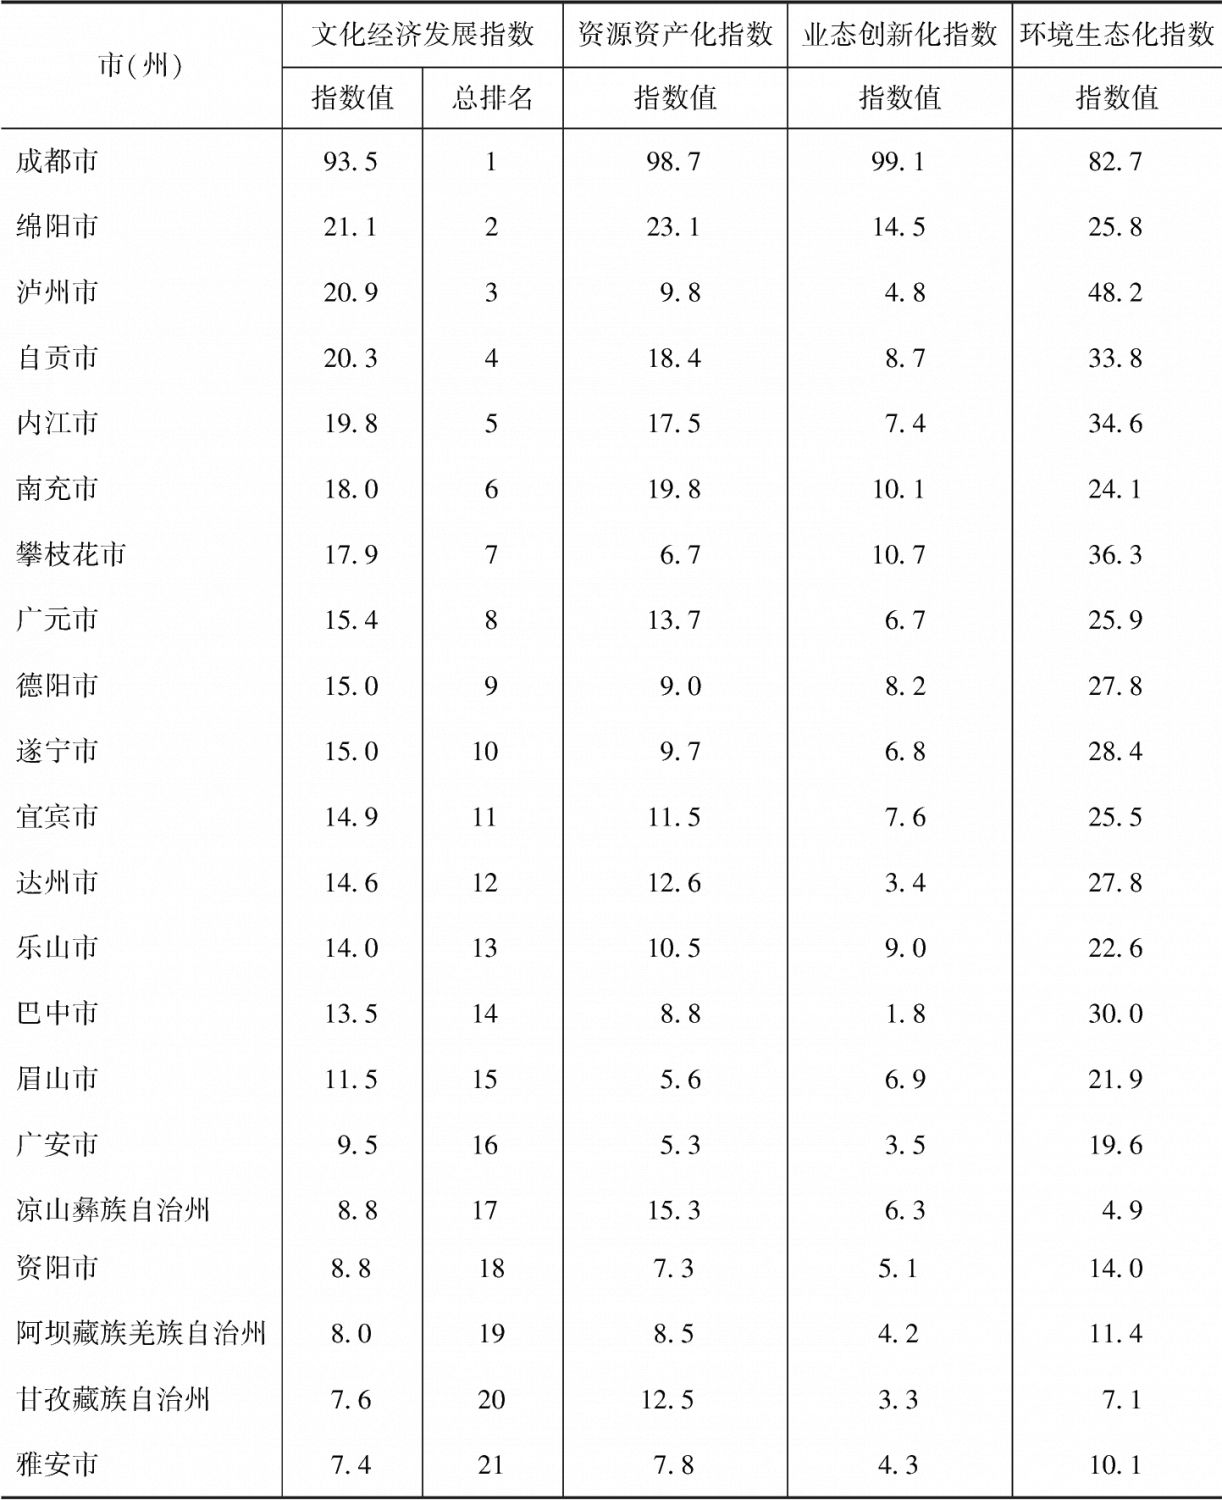 表1-2 四川各市（州）文化经济发展指数